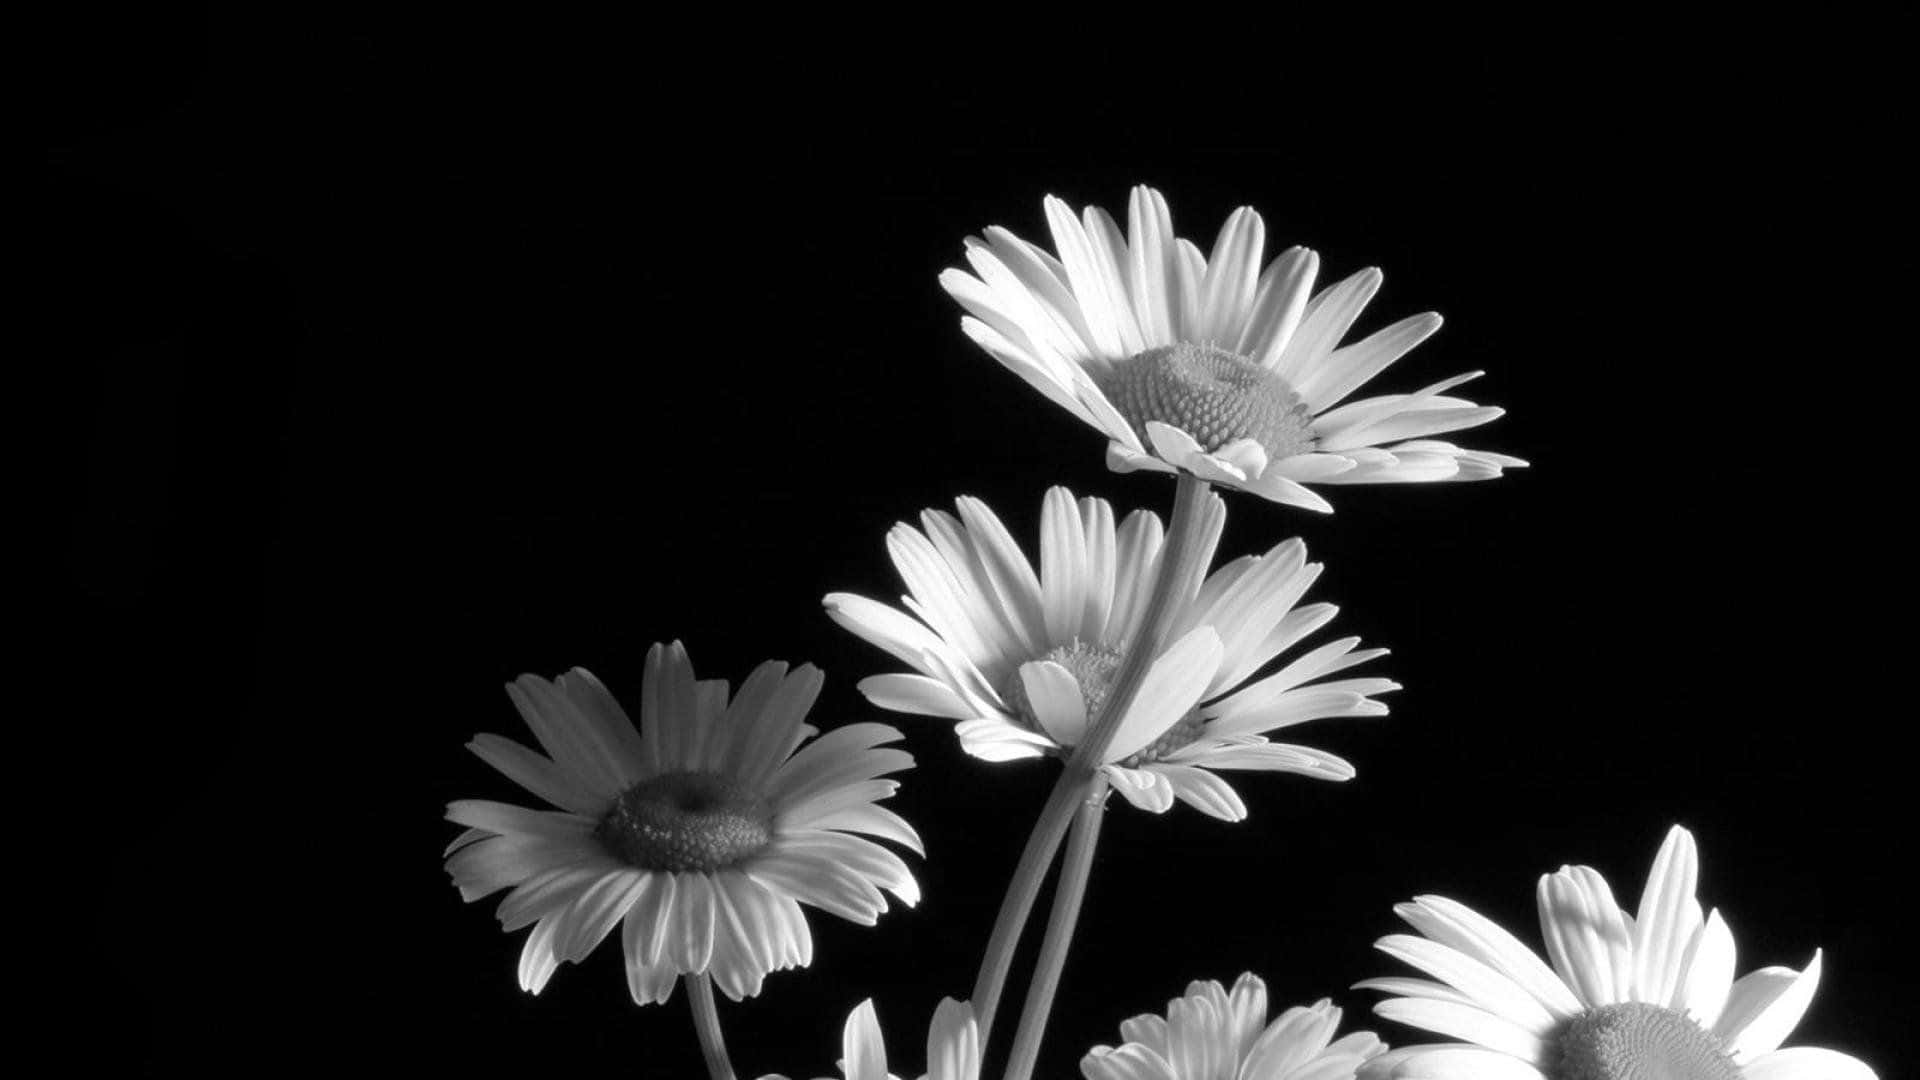 Unahermosa Flor En Blanco Y Negro Que Brinda Contraste Y Armonía.